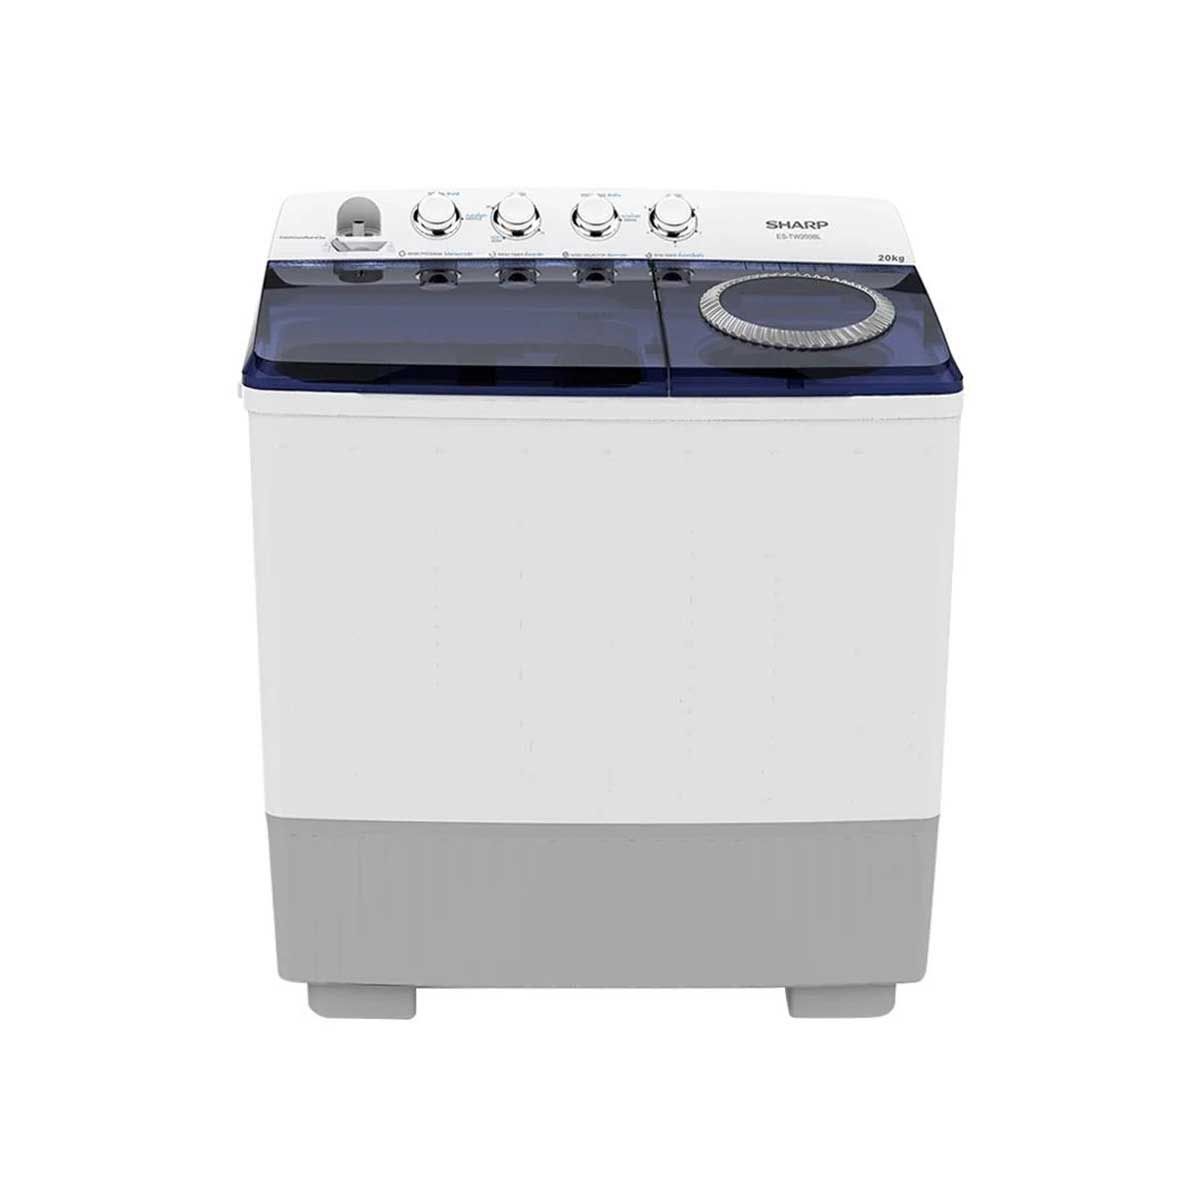 SHARP  เครื่องซักผ้า 2 ถัง 20 kg สีขาวเทา รุ่น ES-TW200BL